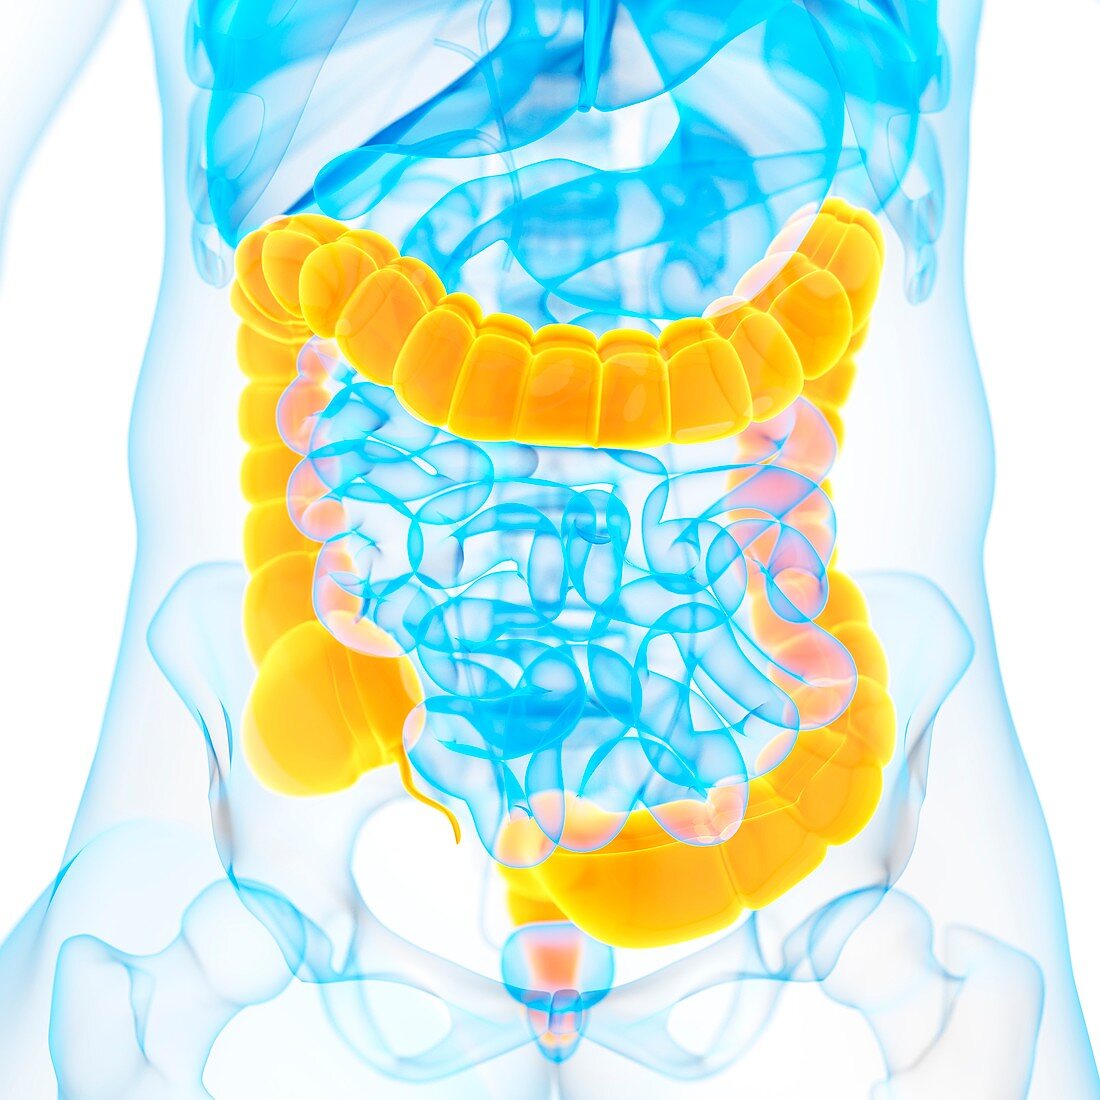 Large intestine,illustration